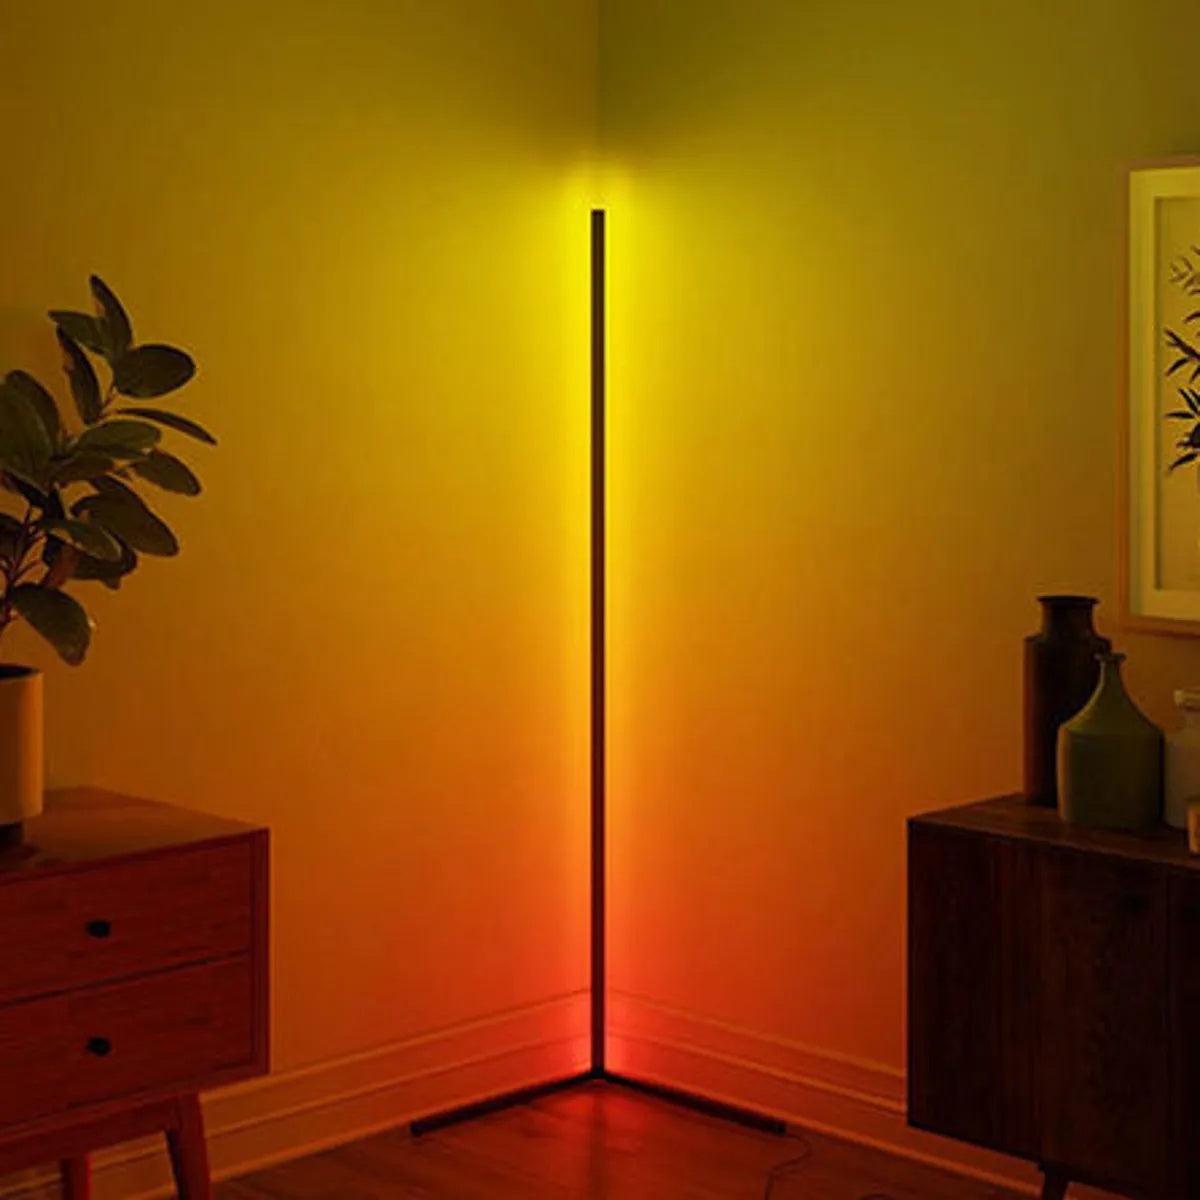 Corner Floor Lamp, Minimalist LED Light Warm Standing Floor